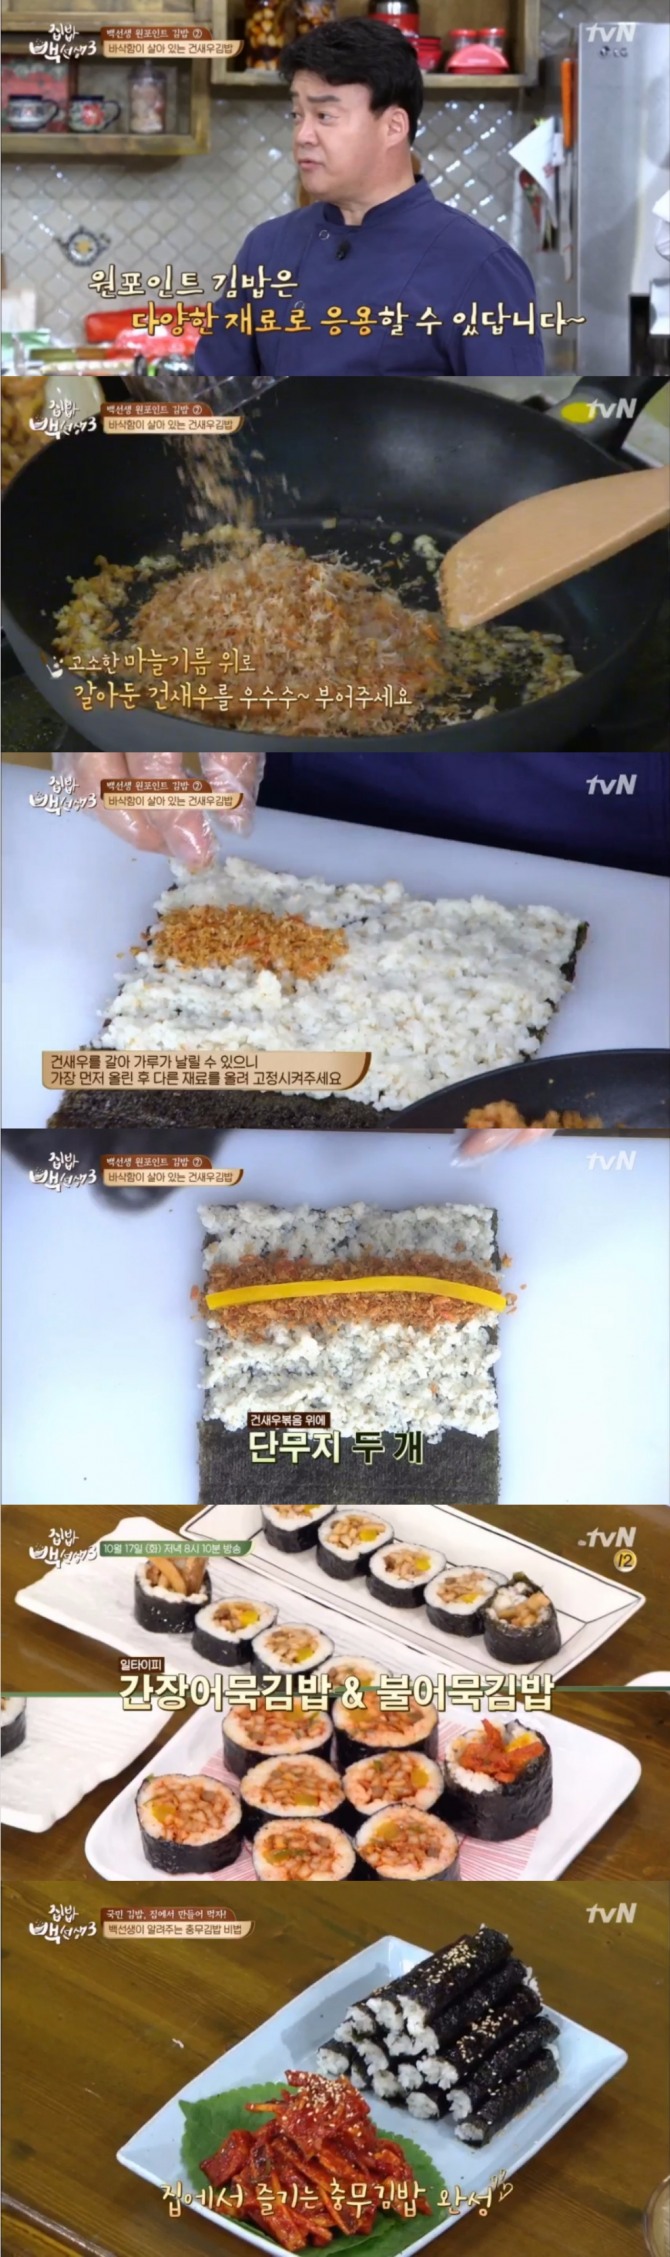 17일 방송된 tvN 집밥 백선생3에서는 백종원이 원포인트 김밥으로 건새우김밥과 불어묵김밥, 충무김밥 만드를 비법을 공개했다. 사진=tvN 방송 캡처